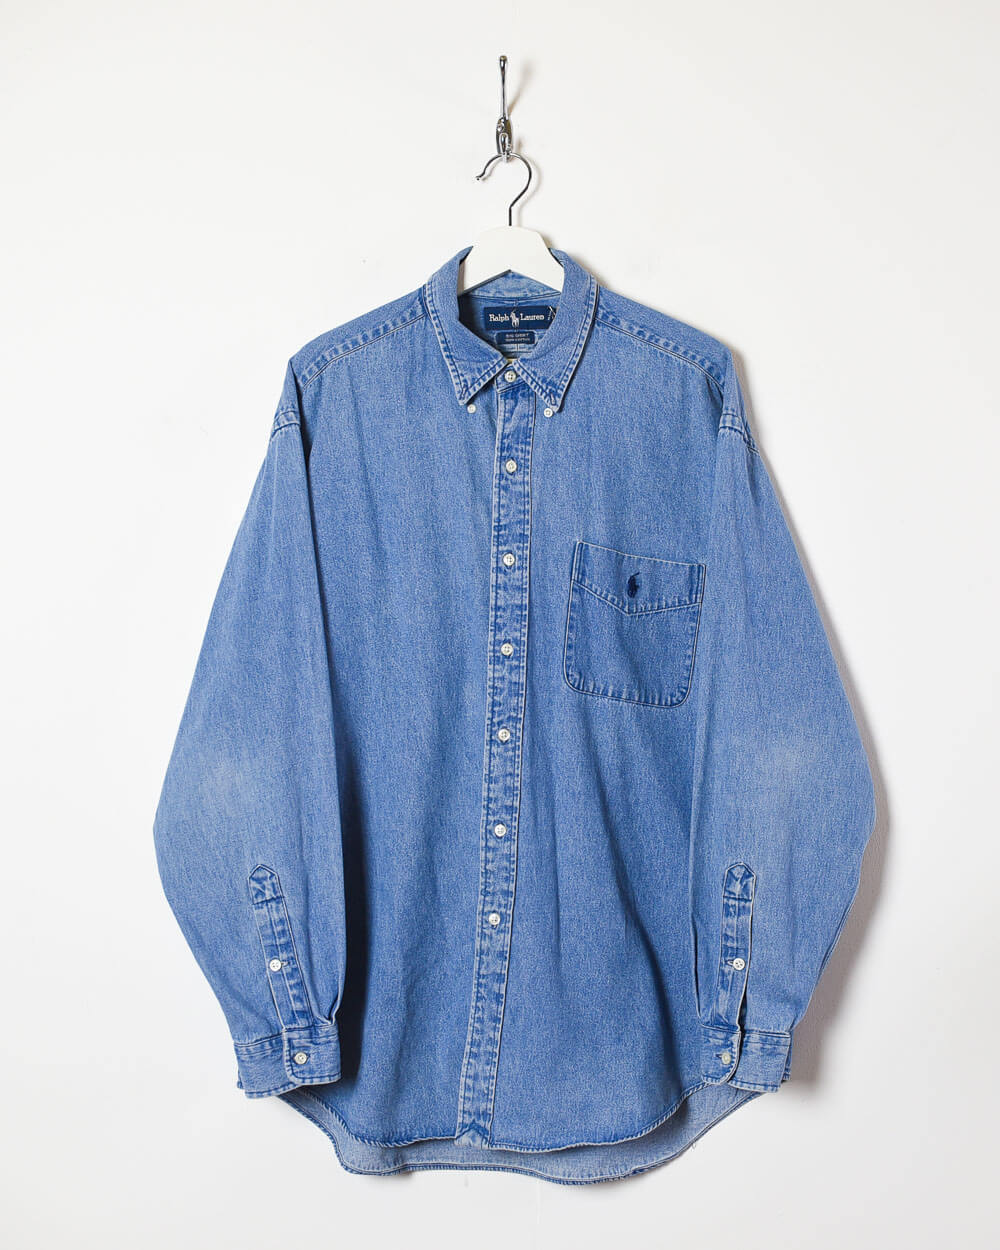 Blue Ralph Lauren Shirt - Large